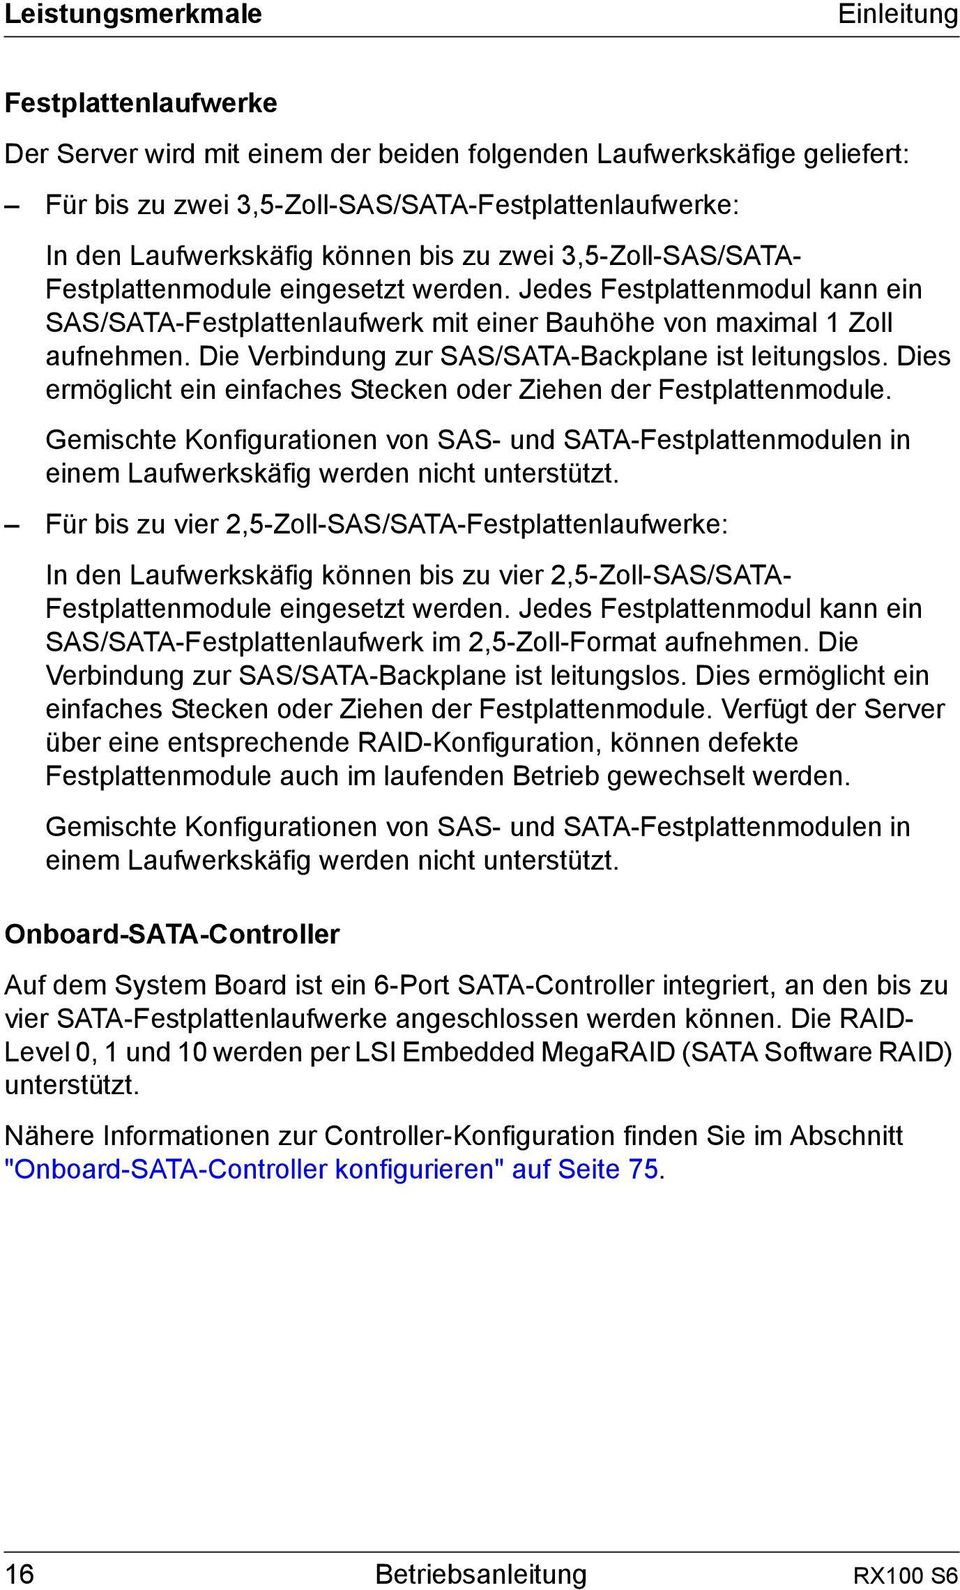 Die Verbindung zur SAS/SATA-Backplane ist leitungslos. Dies ermöglicht ein einfaches Stecken oder Ziehen der Festplattenmodule.